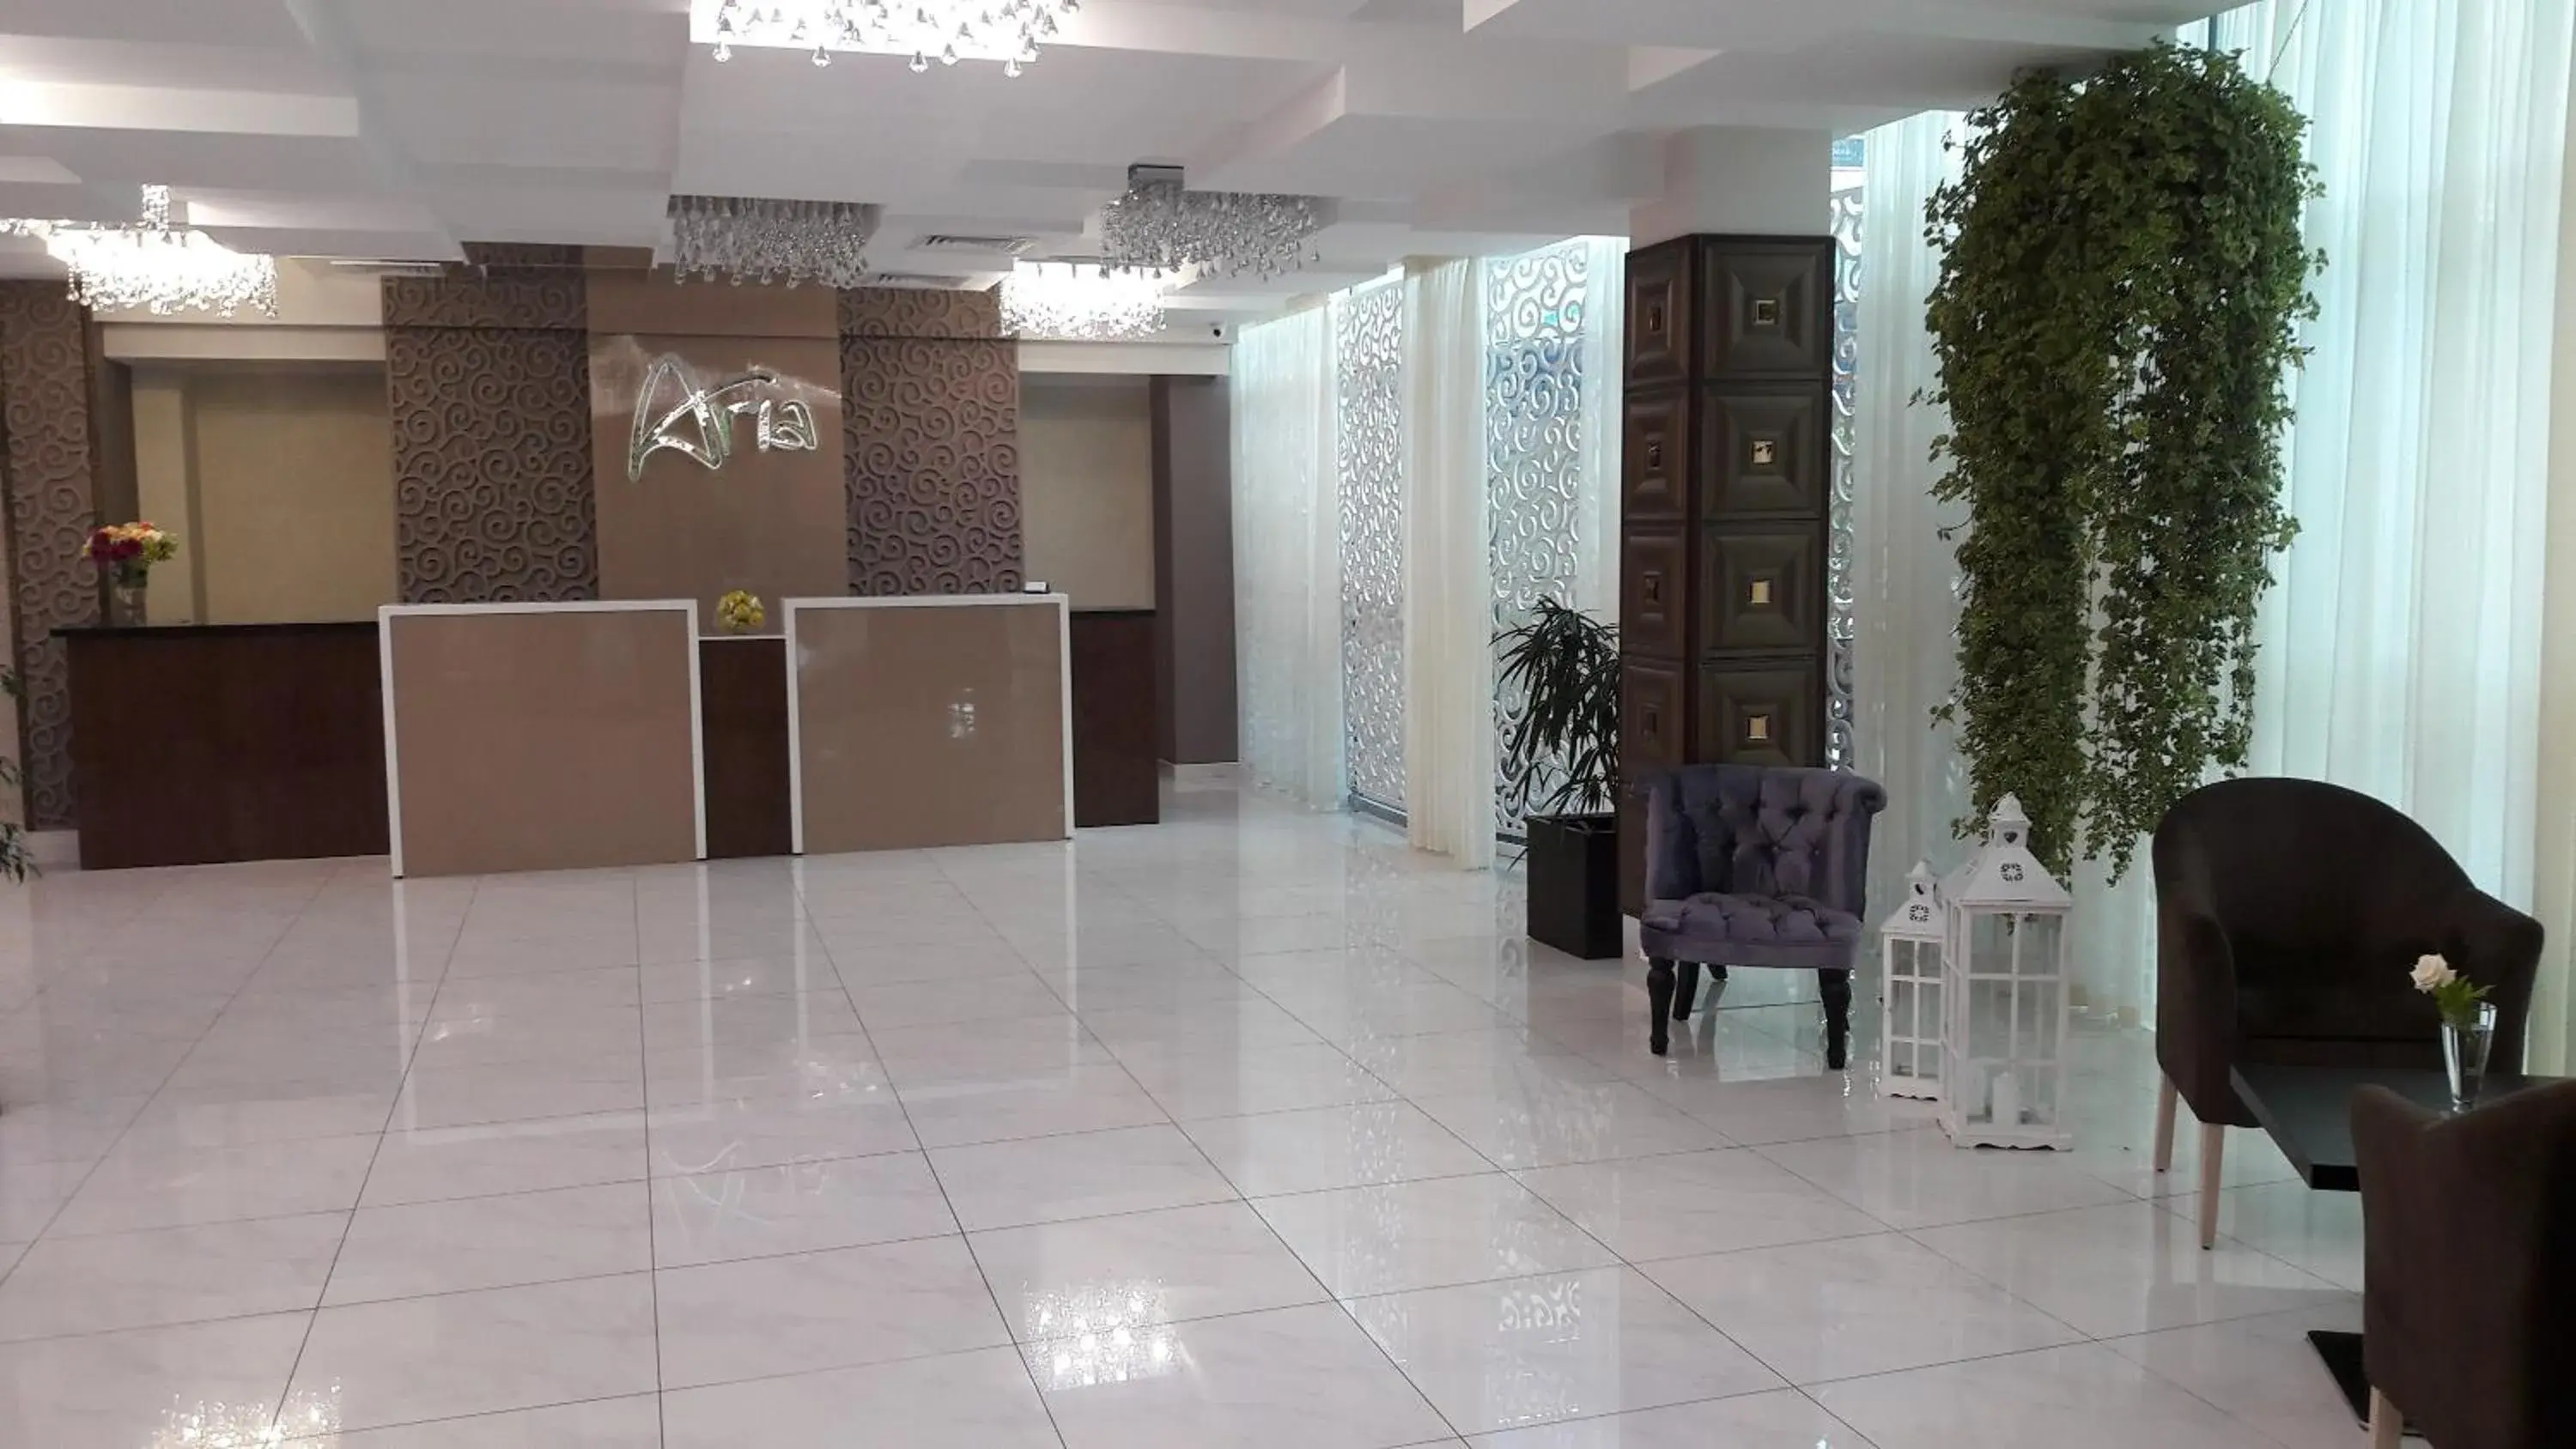 Lobby or reception, Lobby/Reception in Aria Hotel Chisinau